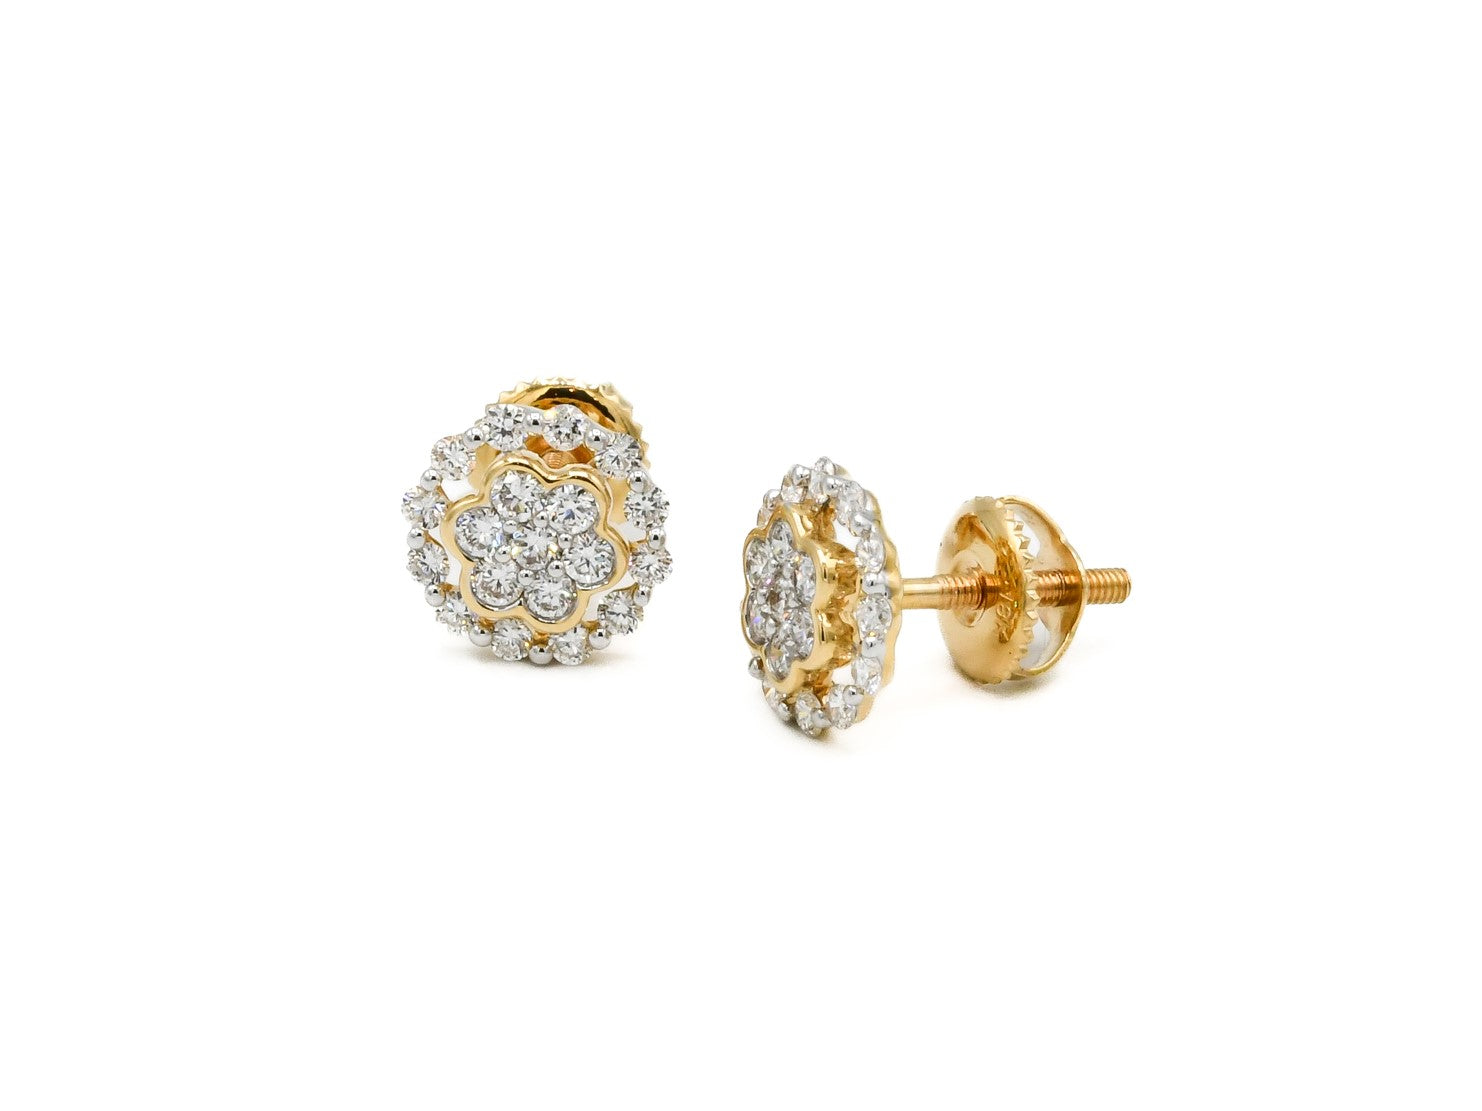 18ct Gold 0.58ct Diamond Stud Earrings - Roop Darshan